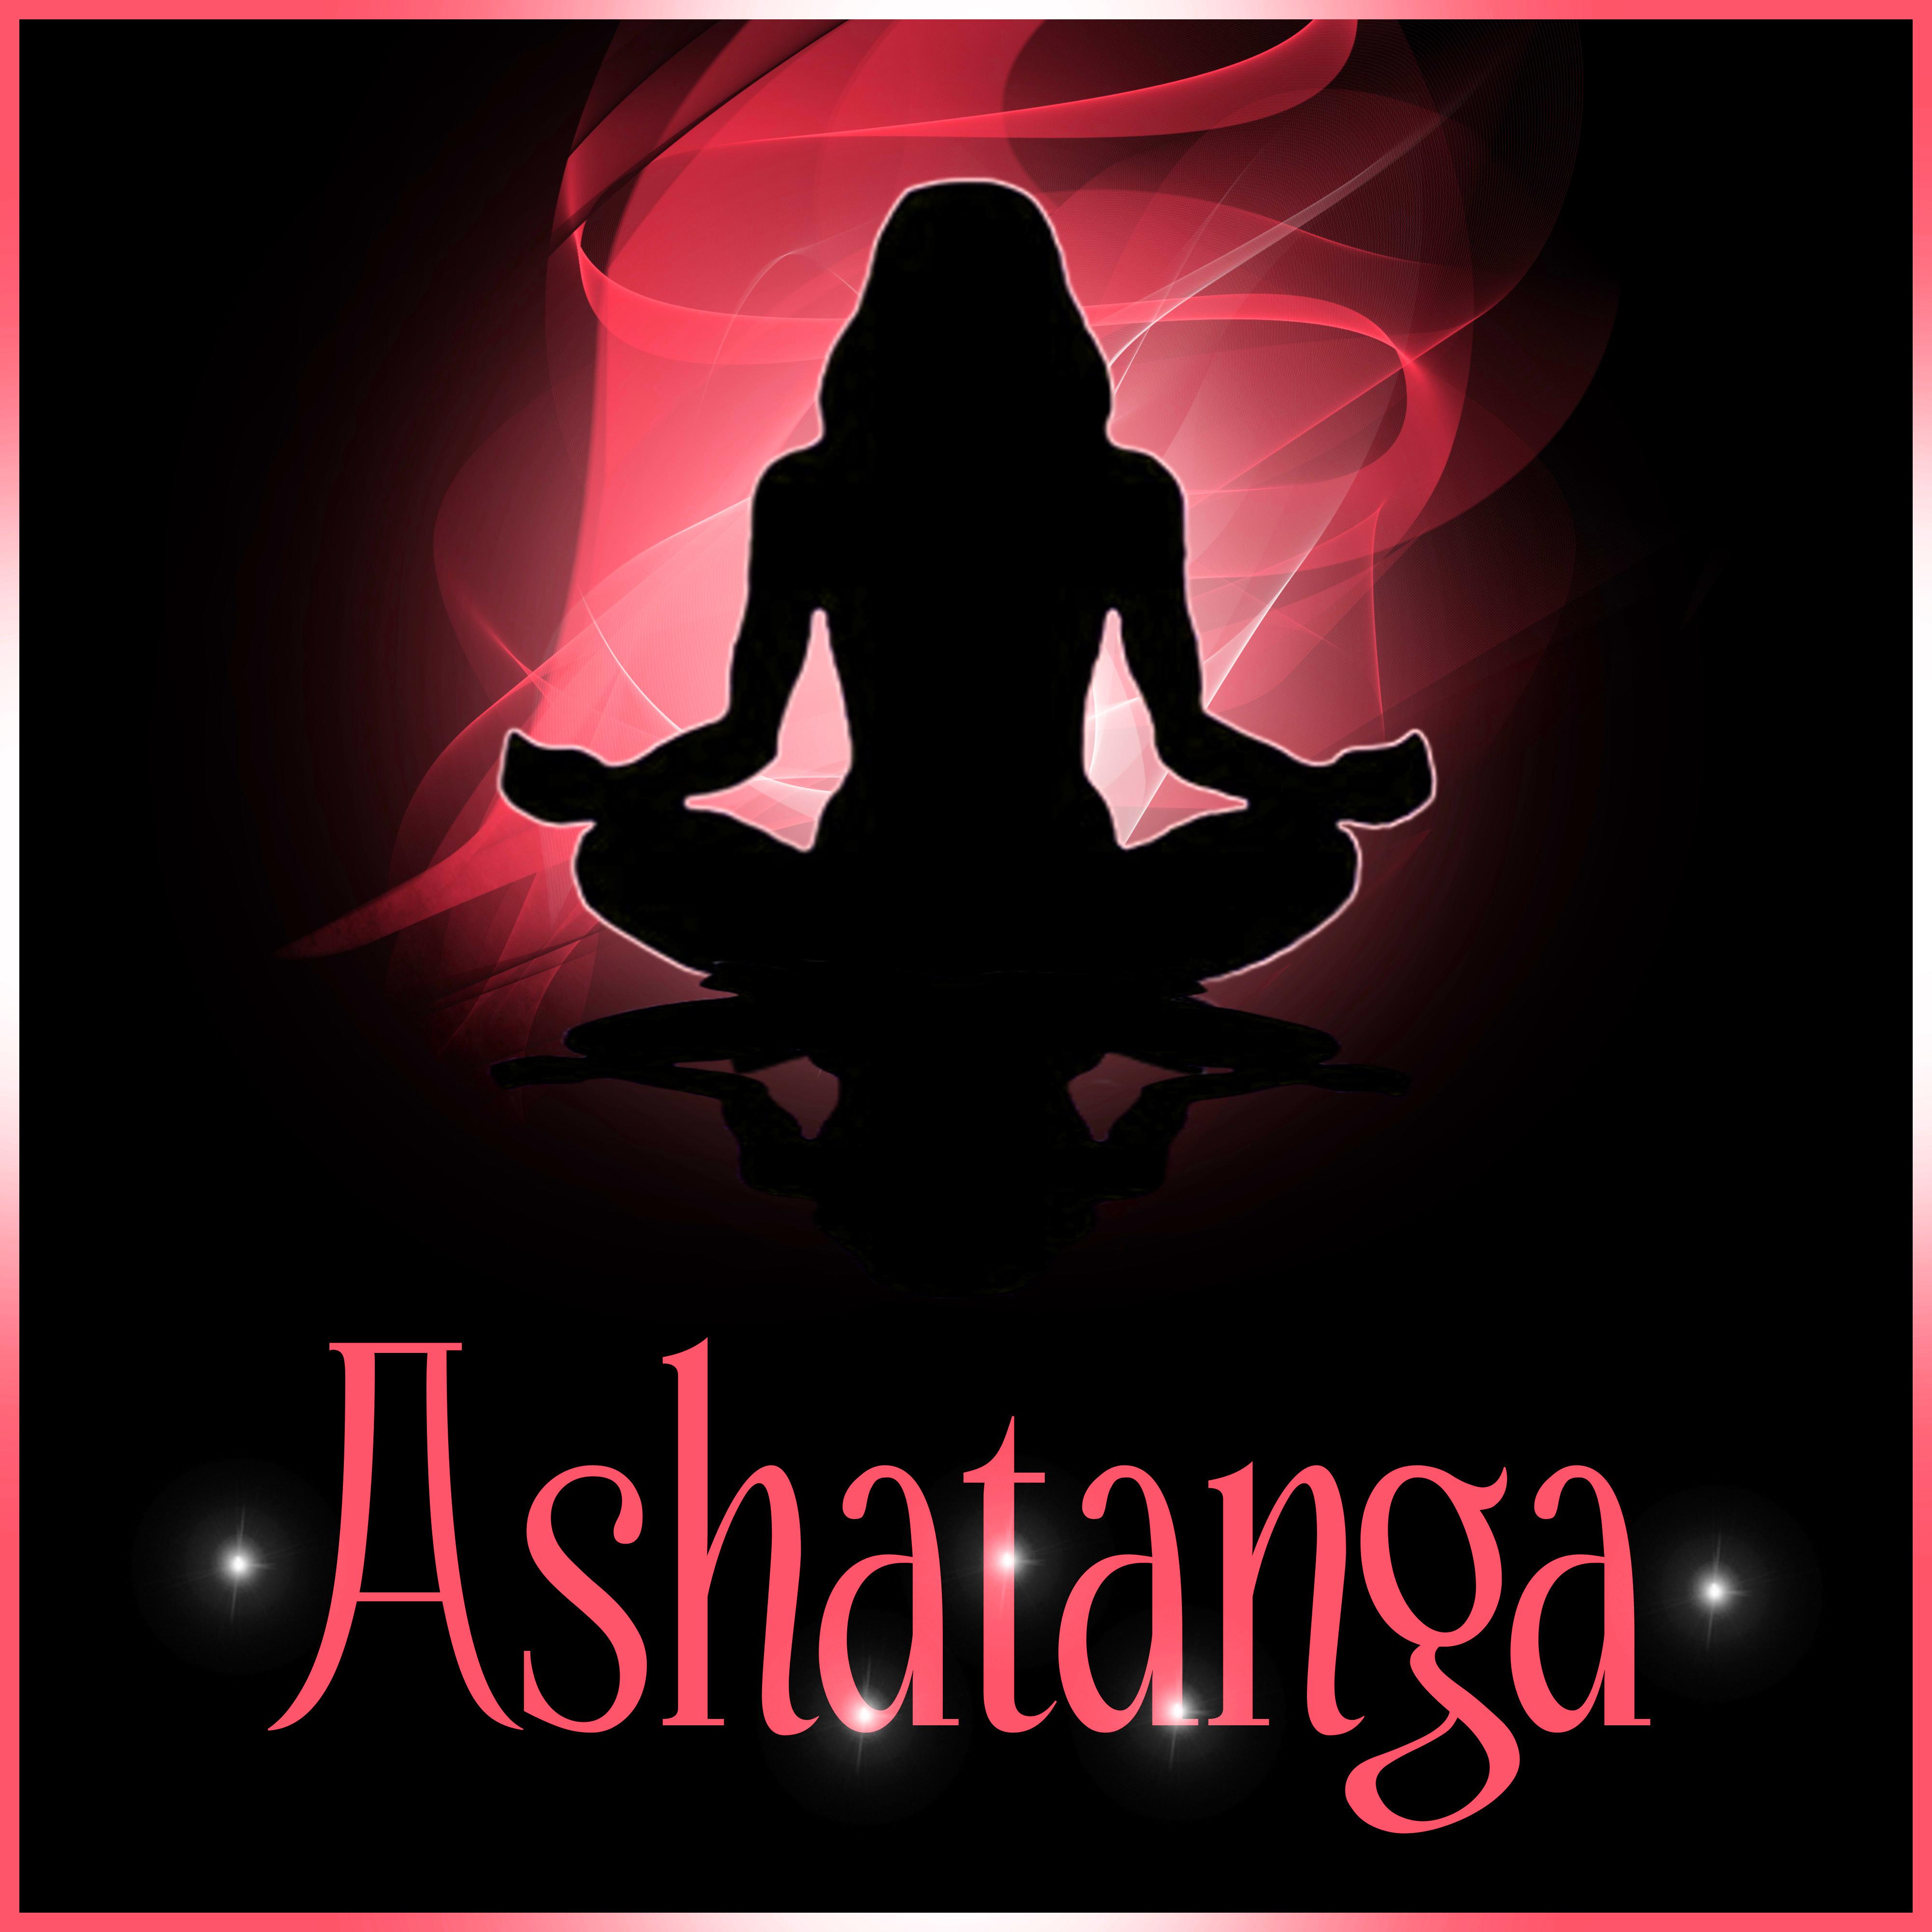 Ashatanga - New Age Music for Meditation, Yoga Zen Music, Mindfulness Meditation, Vandana Shiva, Buddha Lounge, Deep Relaxation, Mind & Harmony